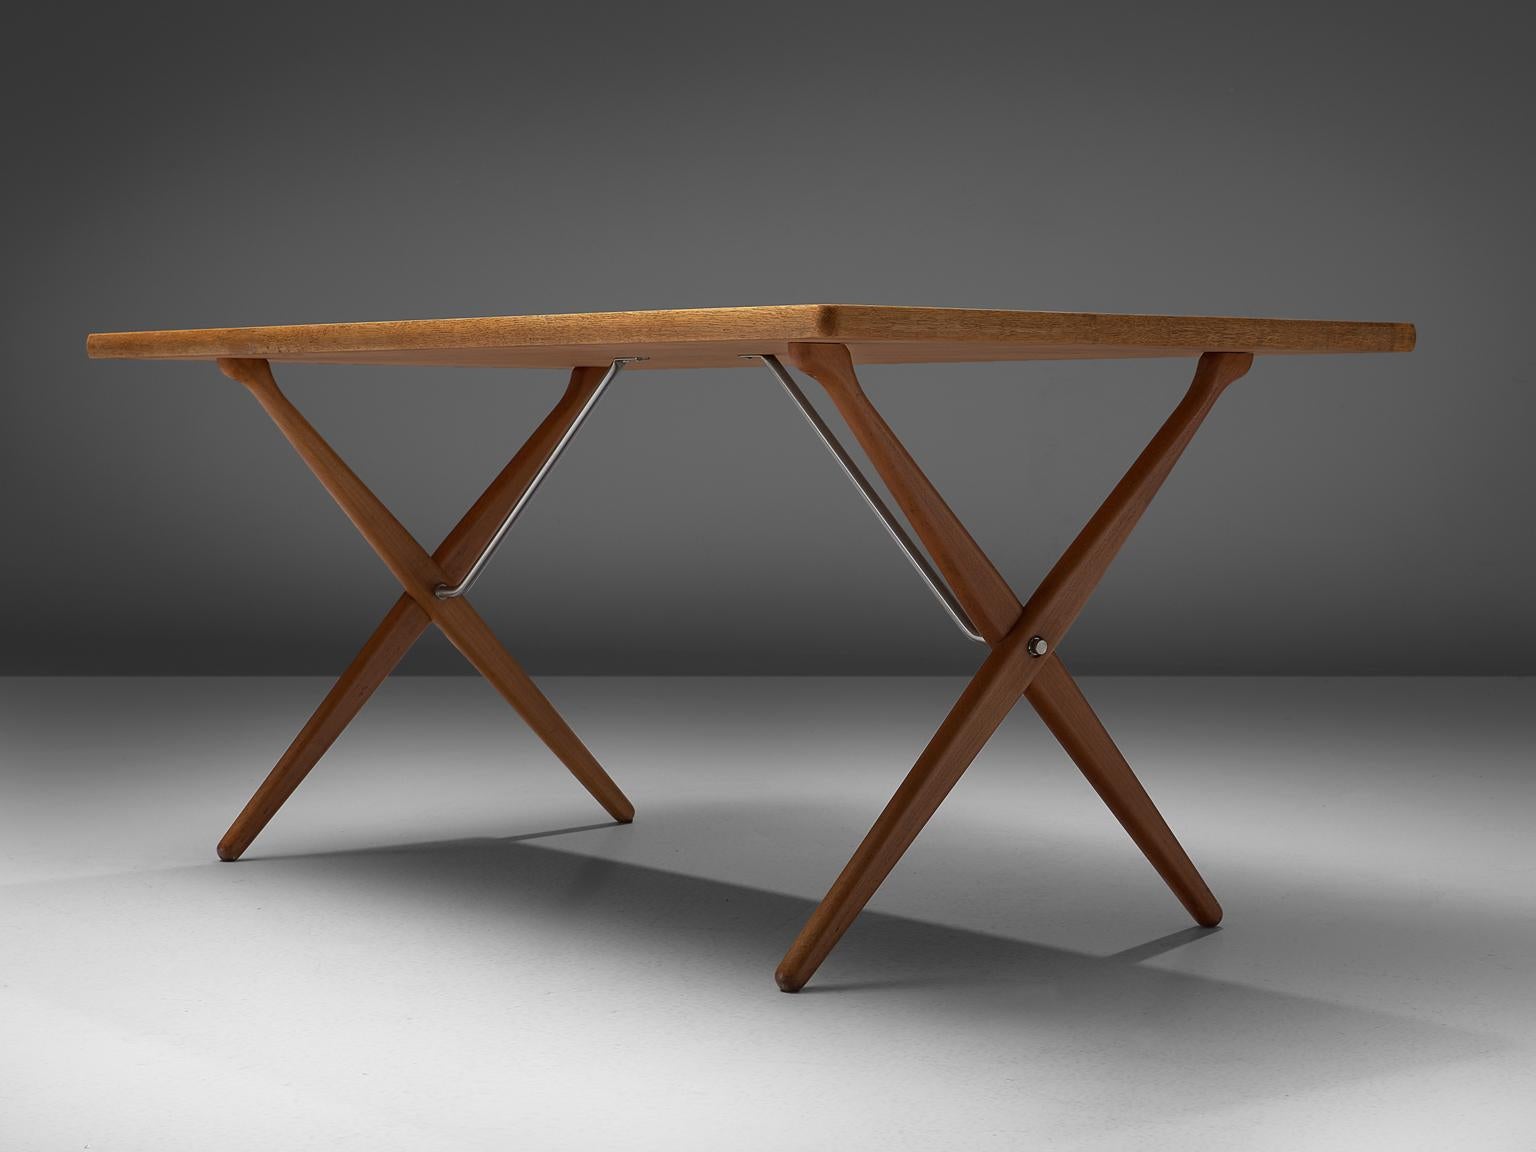 Mid-20th Century Hans J. Wegner for Andreas Tuck Table Model AT-303